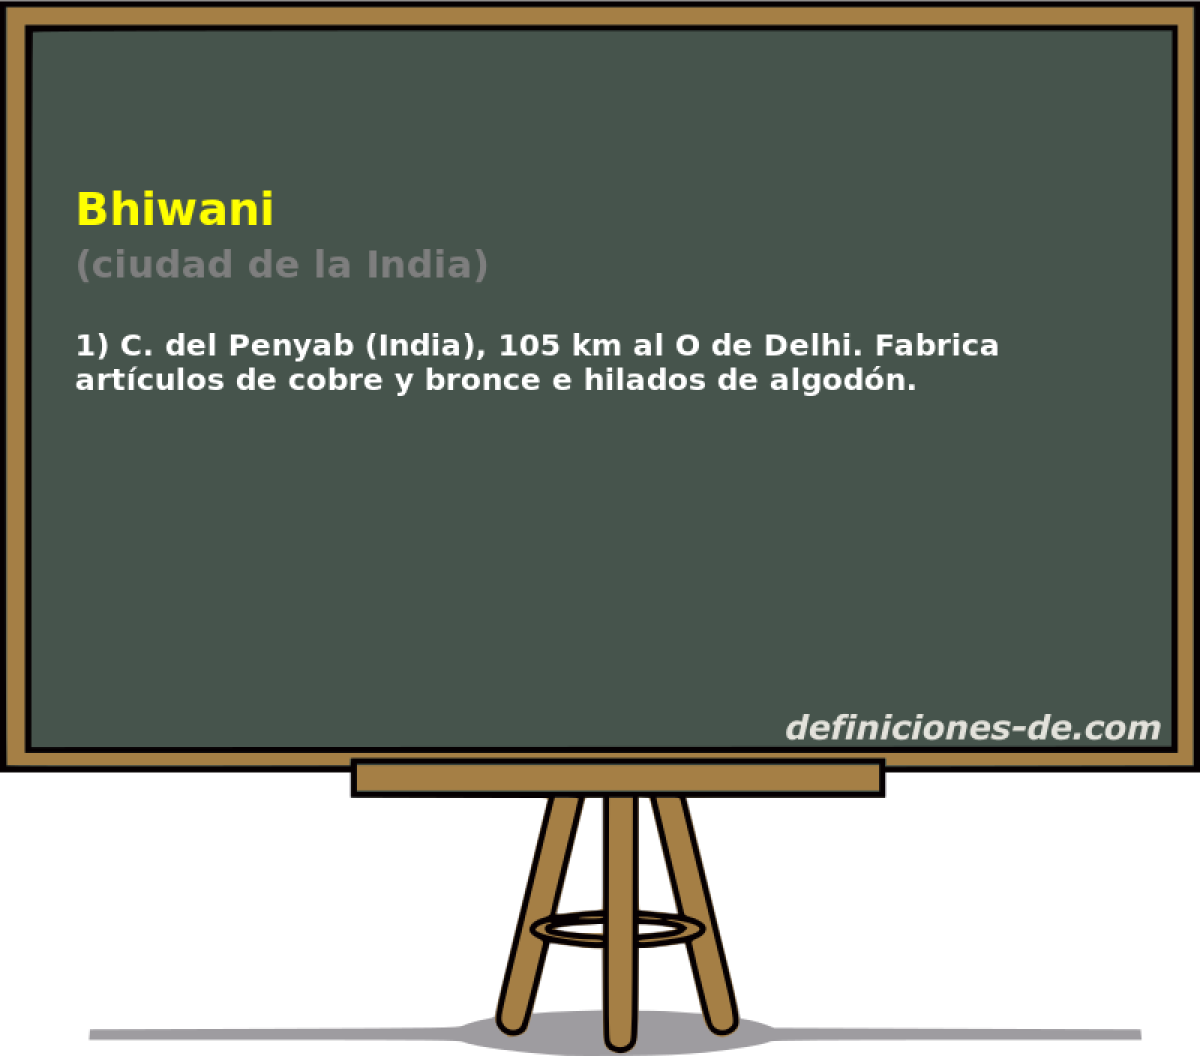 Bhiwani (ciudad de la India)